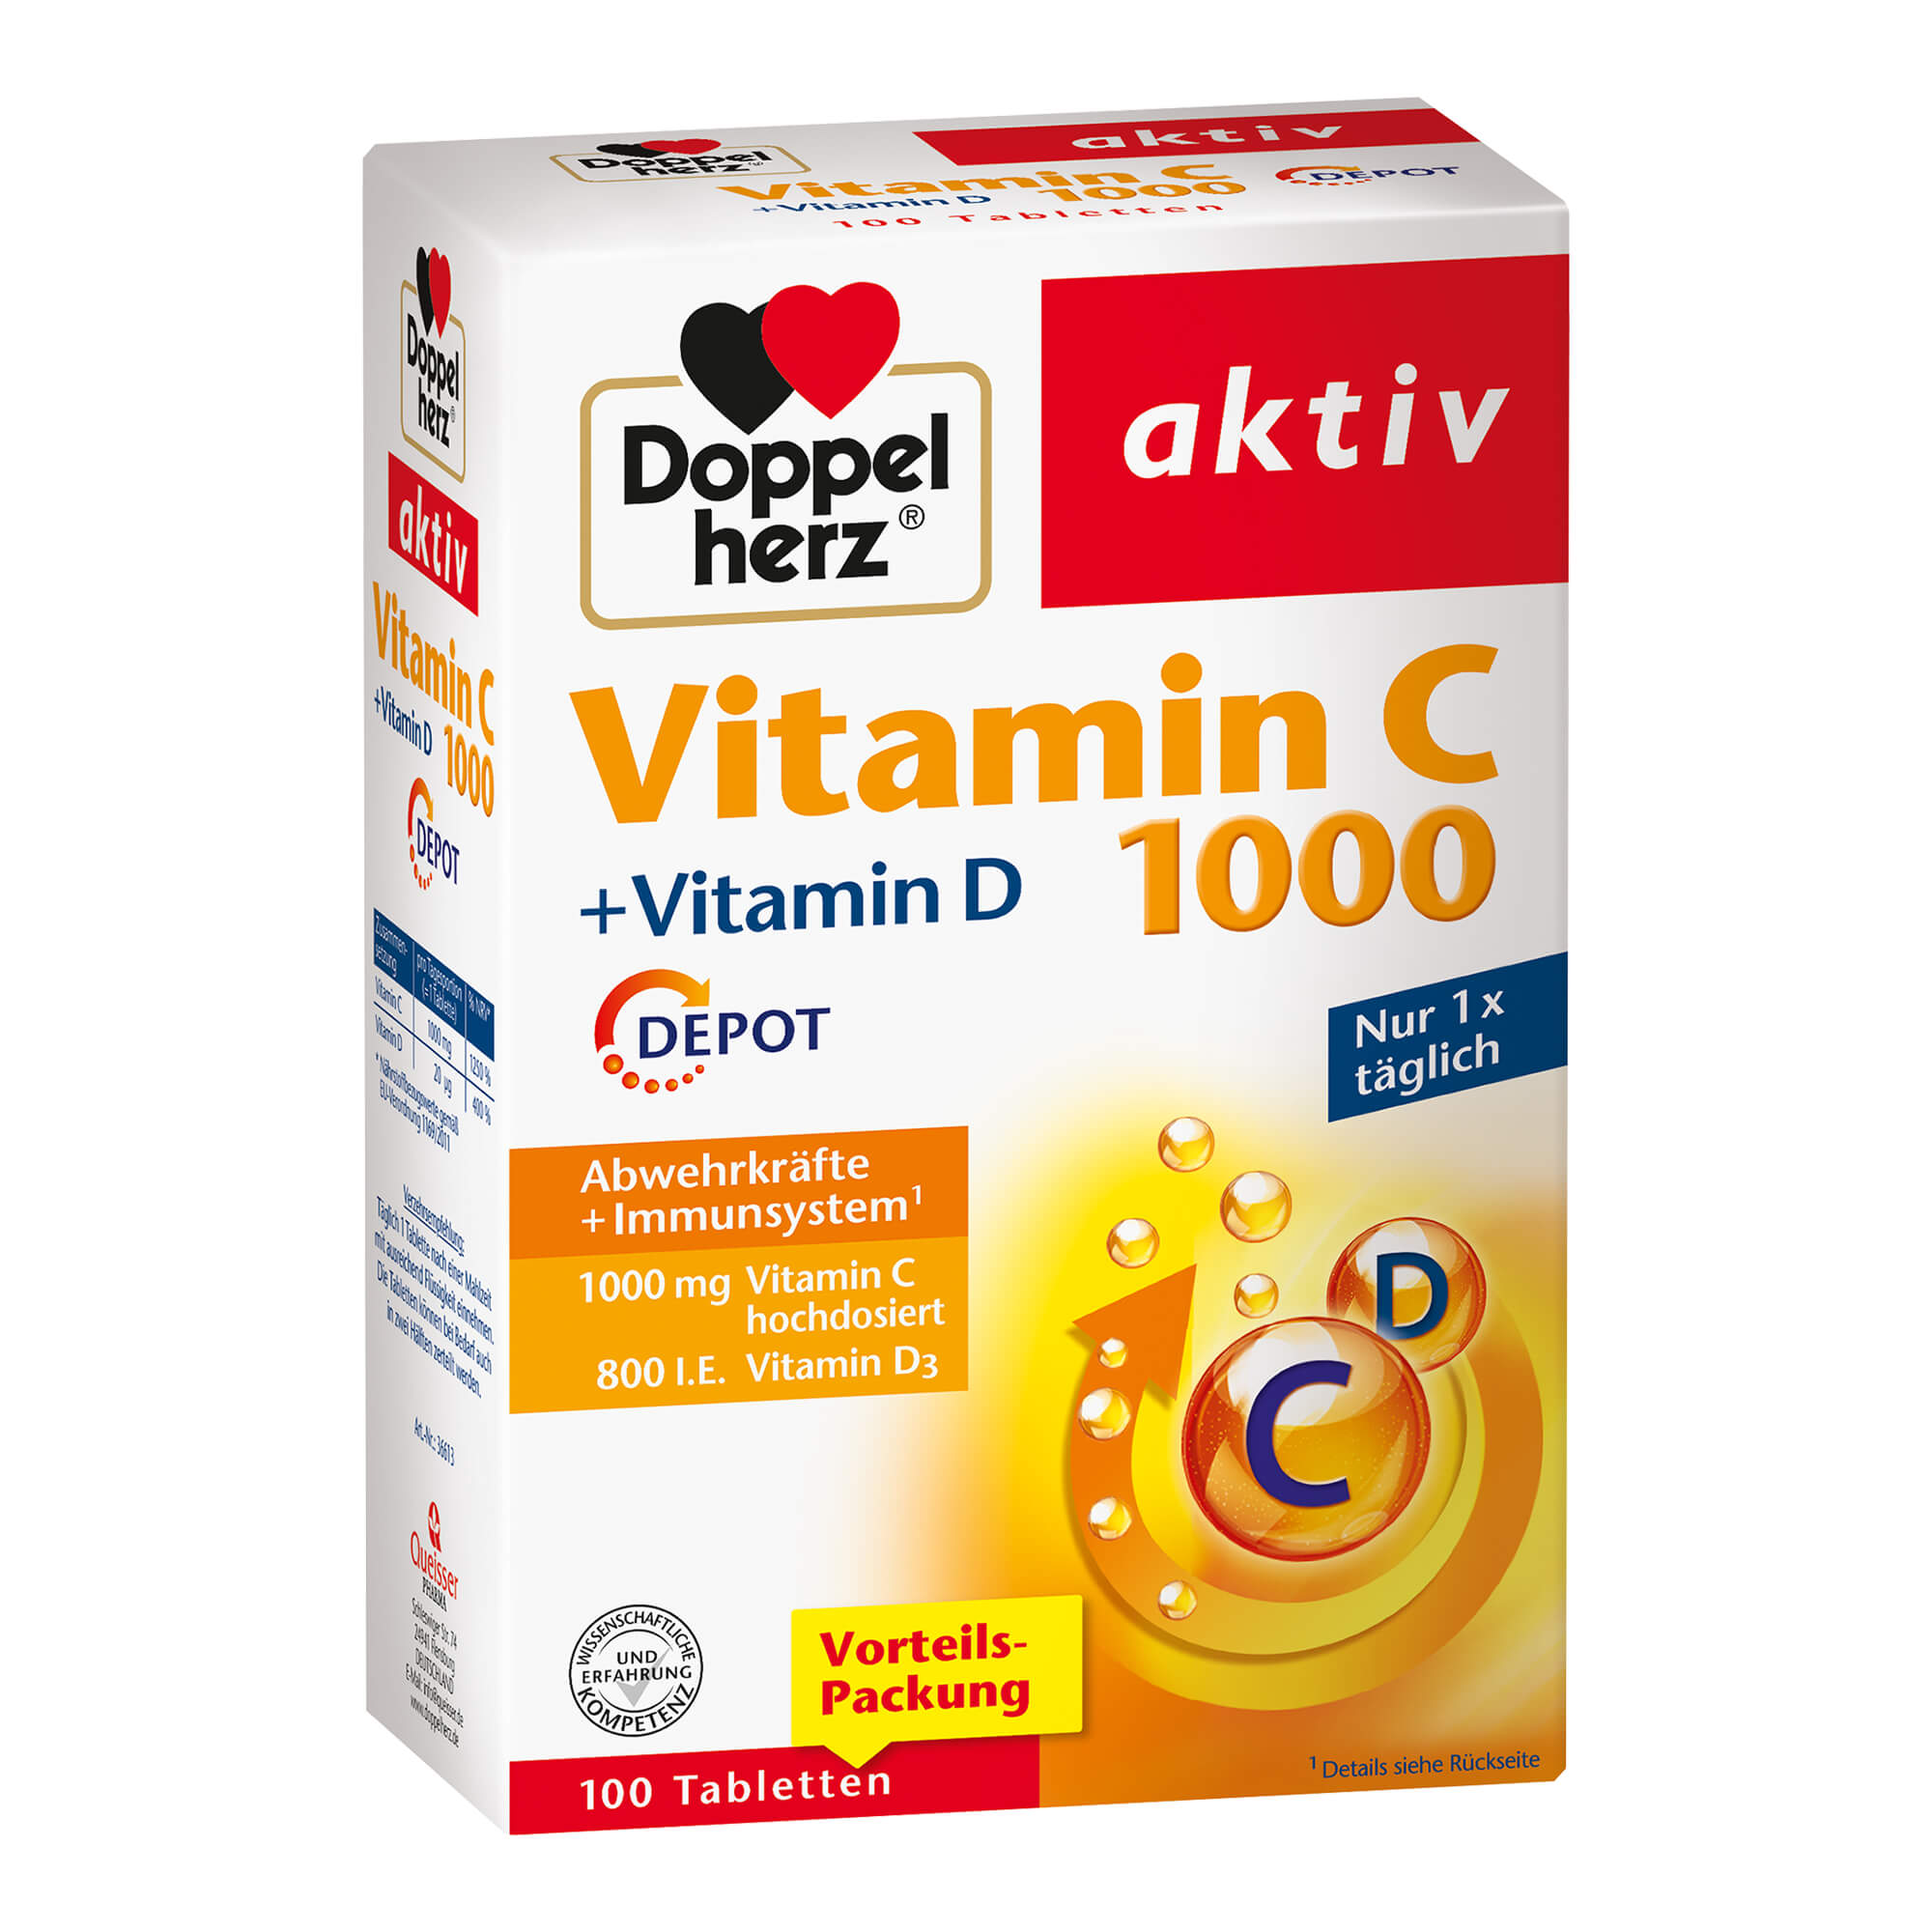 Nahrungsergänzungsmittel mit Vitamin C und D.